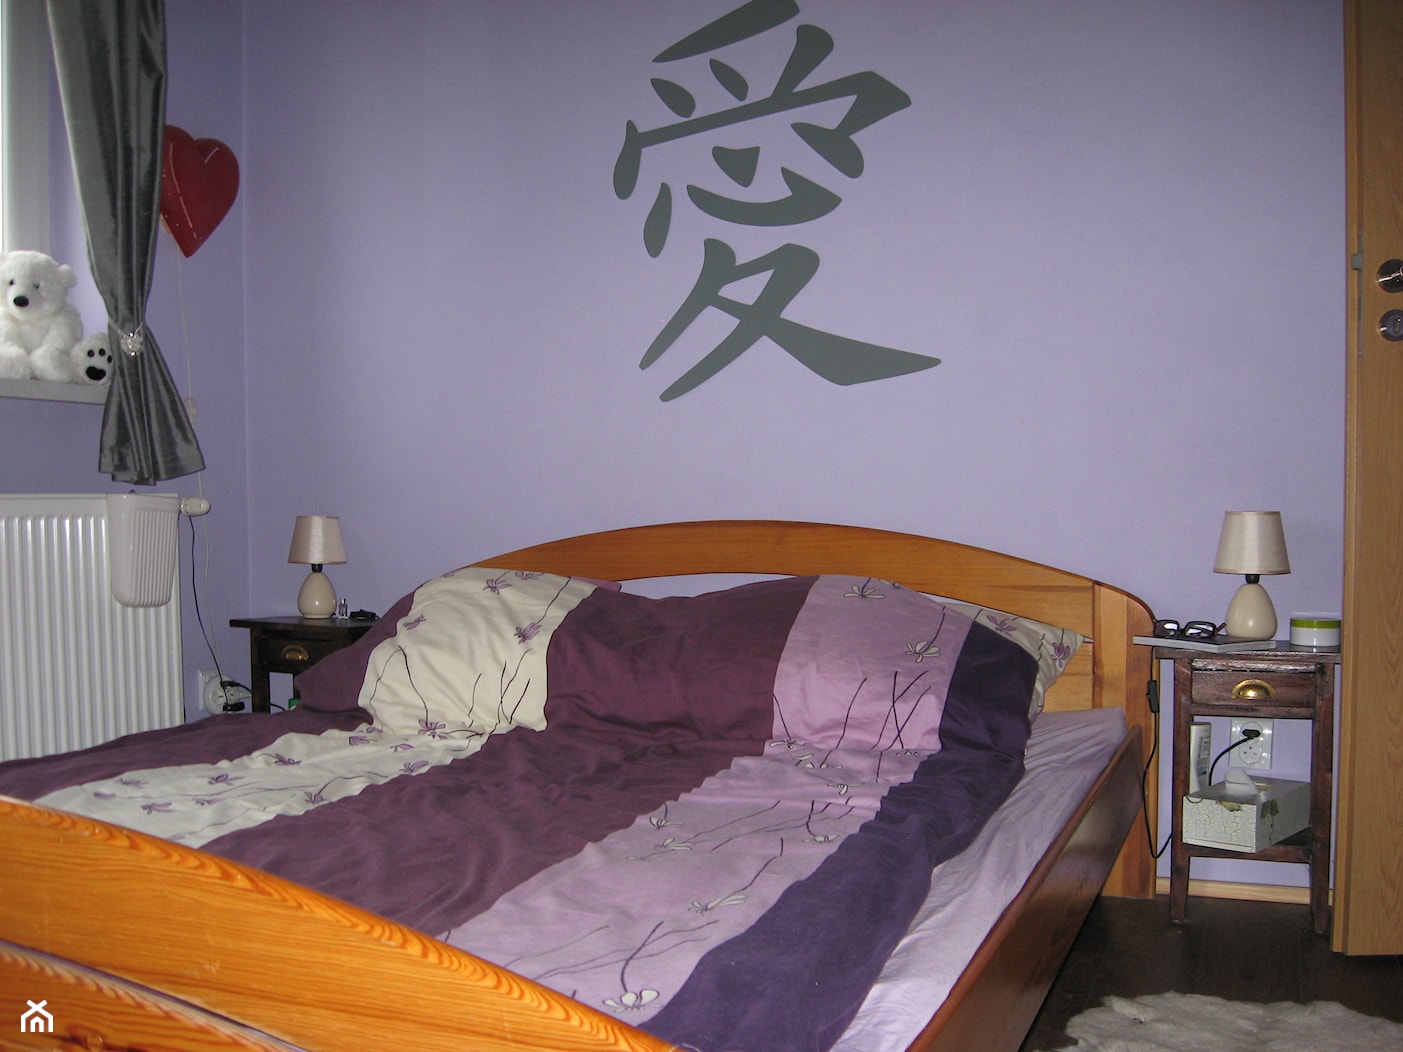 łóżko pod japońskim znakiem MIŁOŚĆ - zdjęcie od Joanna Machnowska - Homebook